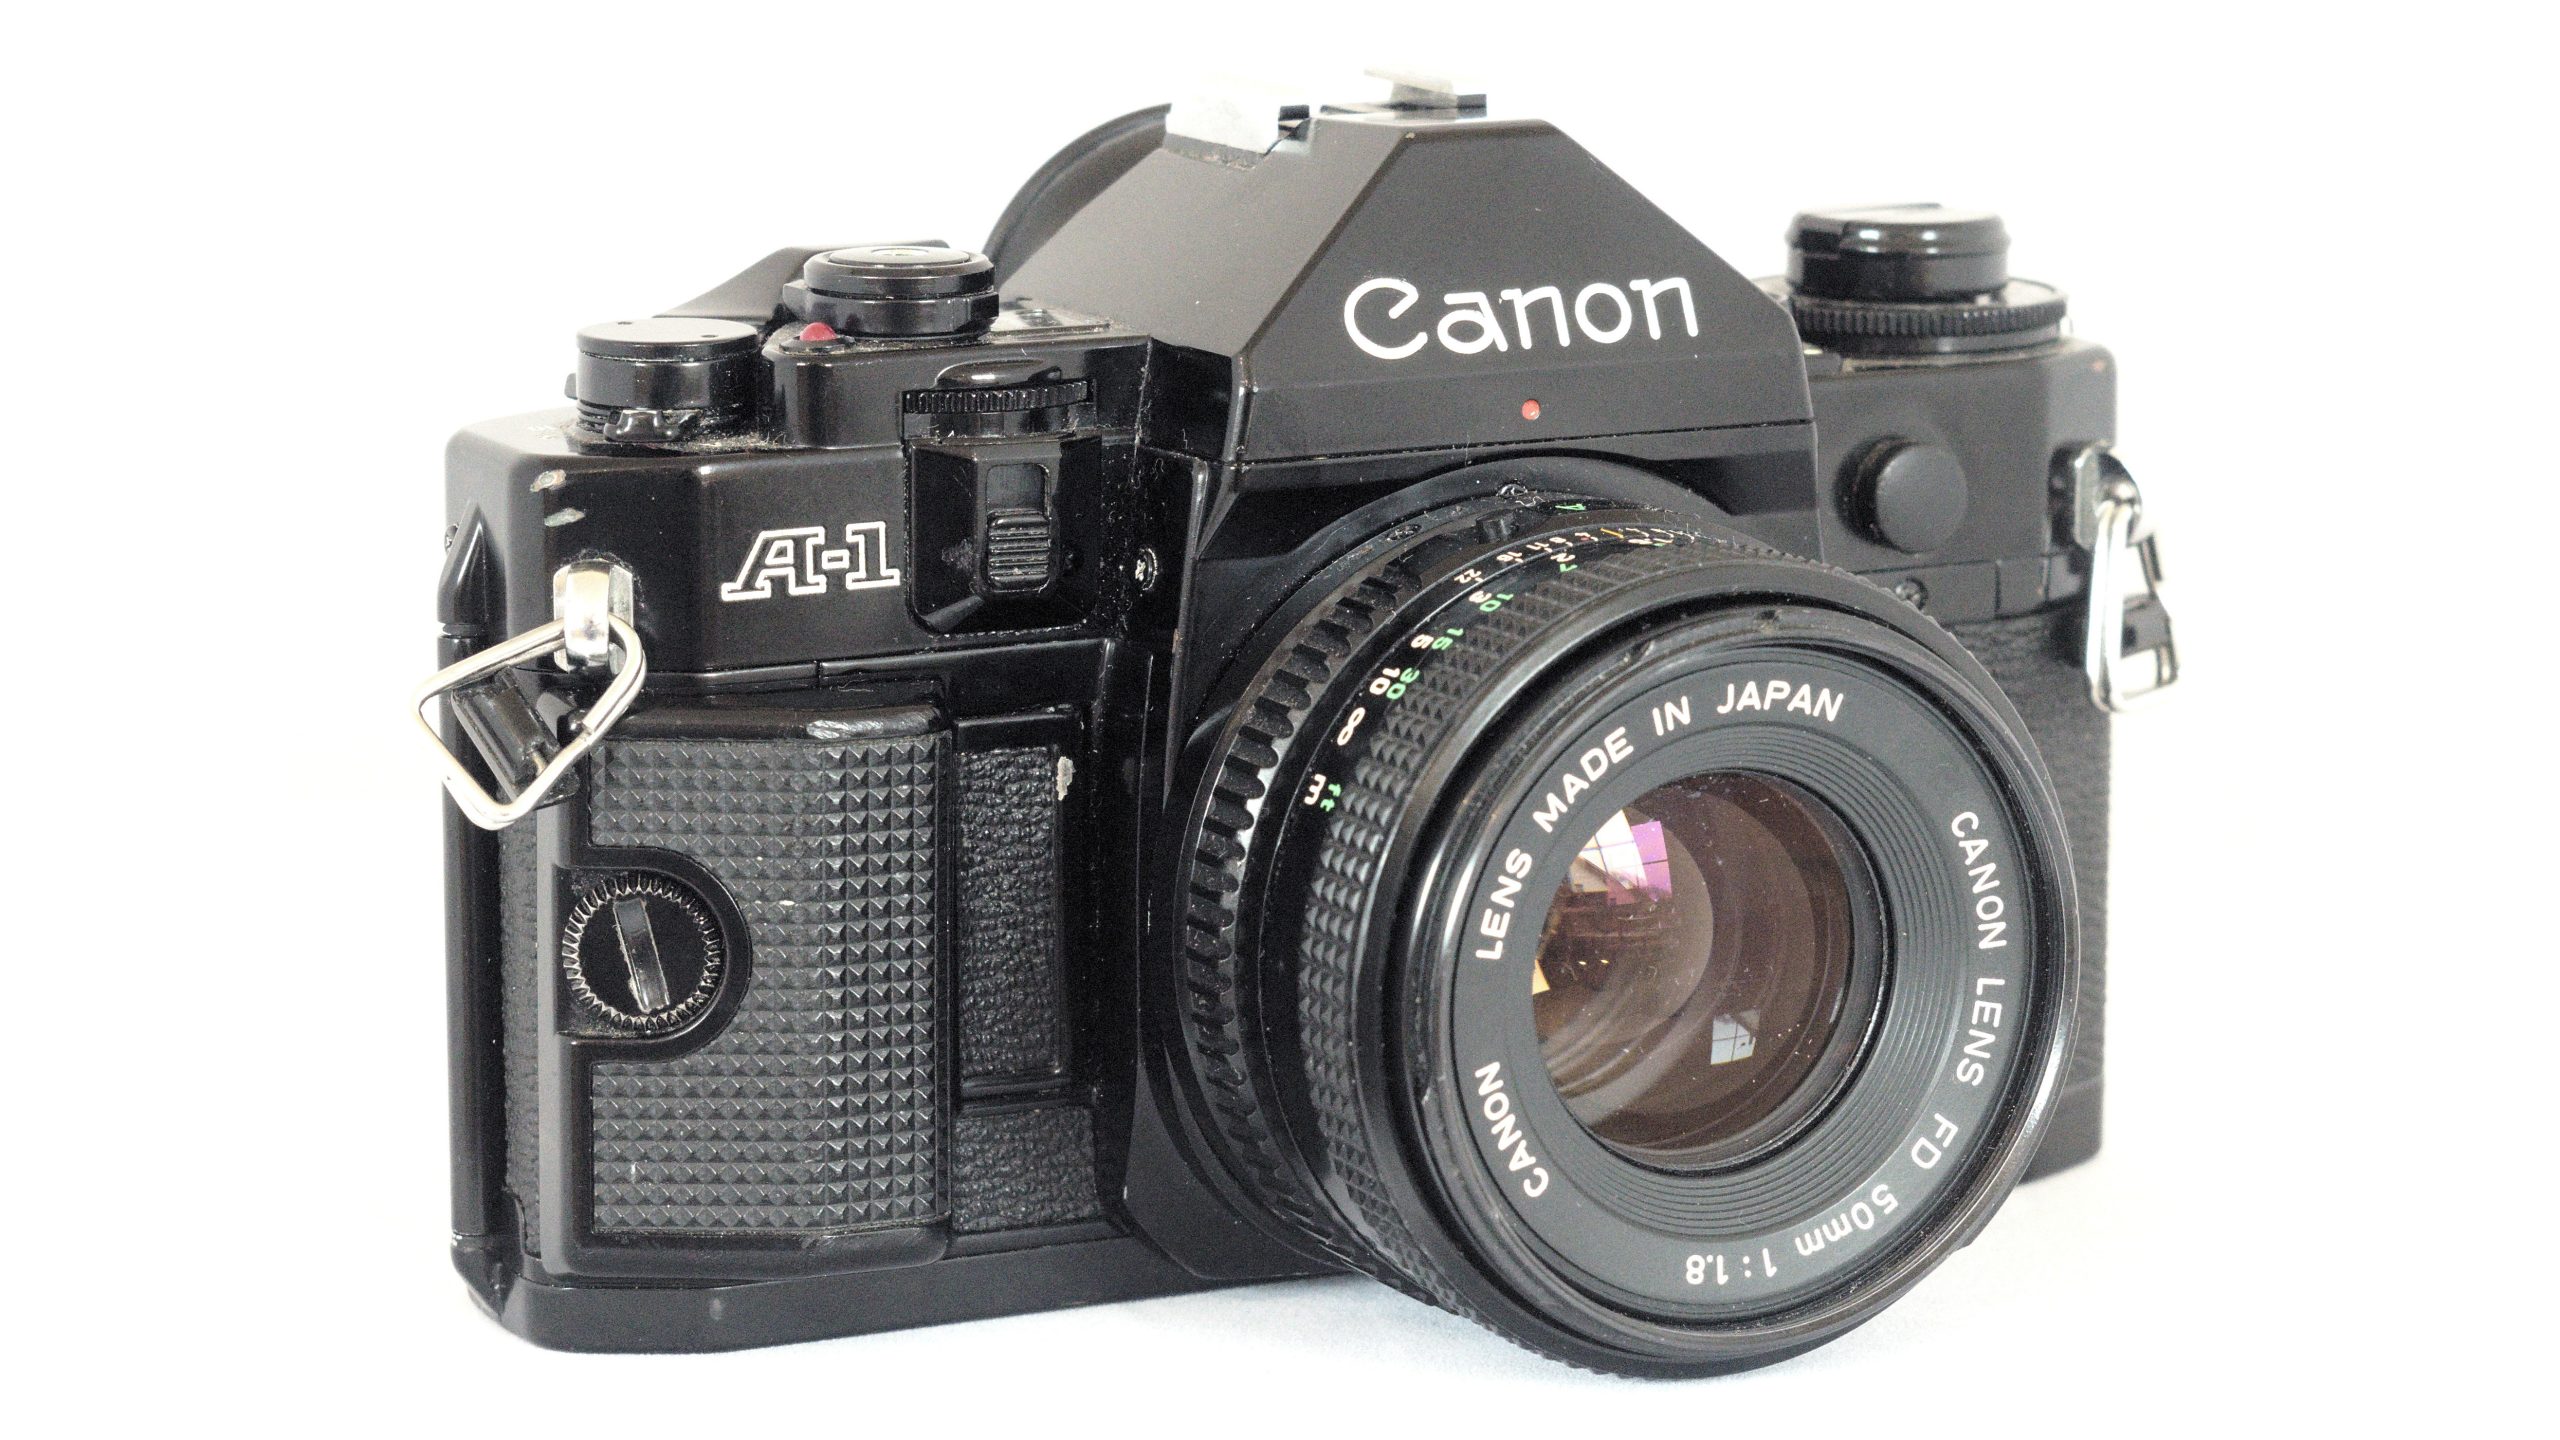 Canon researches interest in retro-style camera body